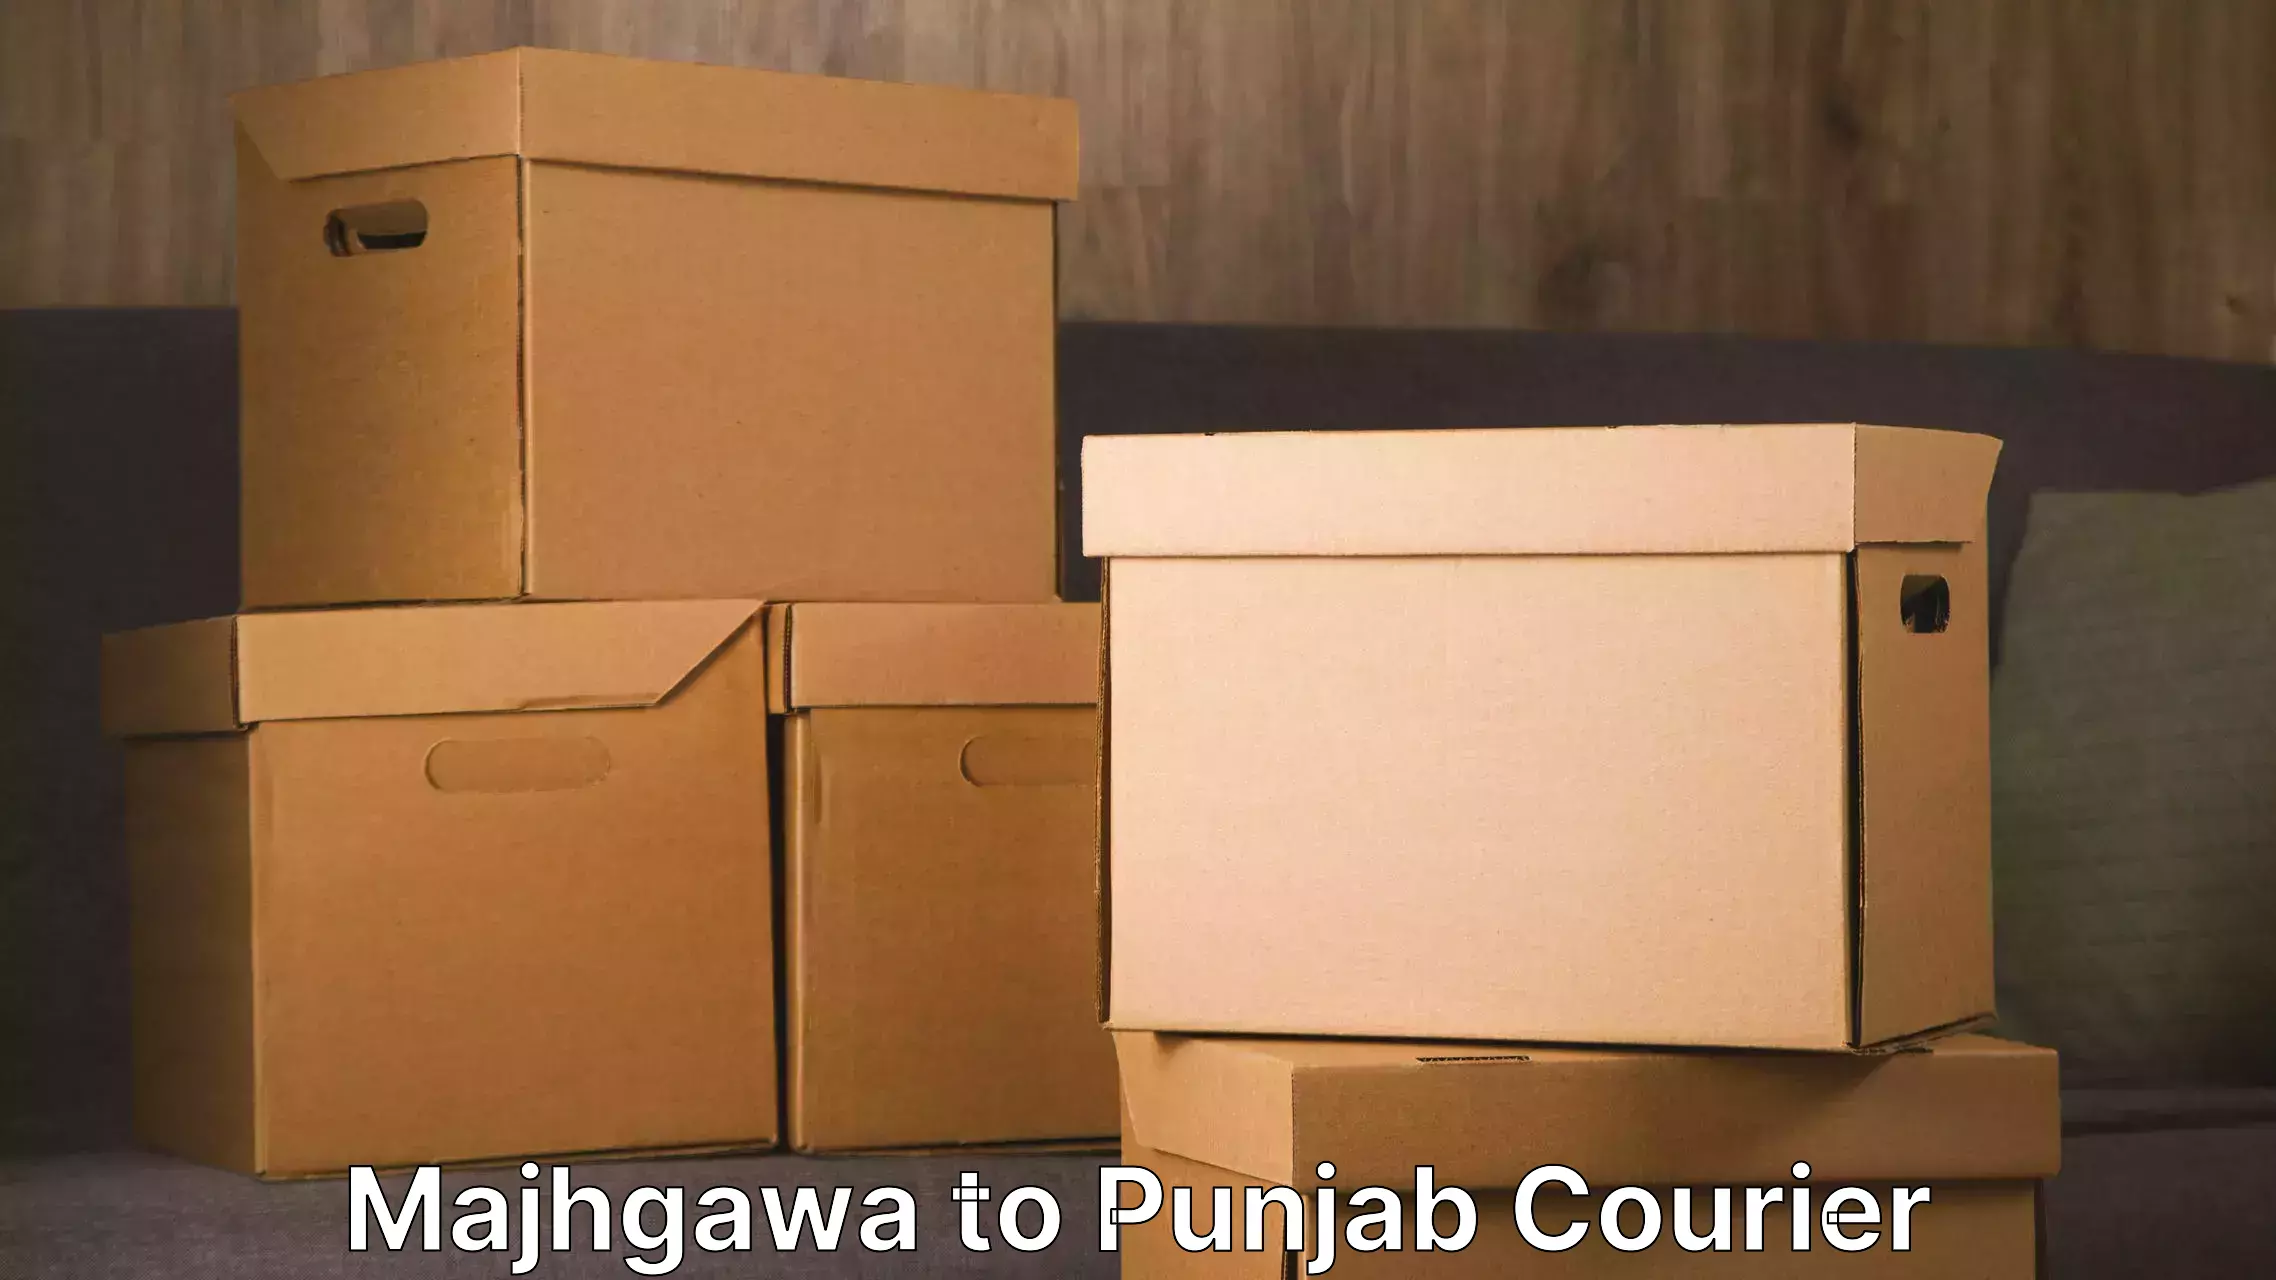 Residential furniture movers Majhgawa to Fatehgarh Sahib